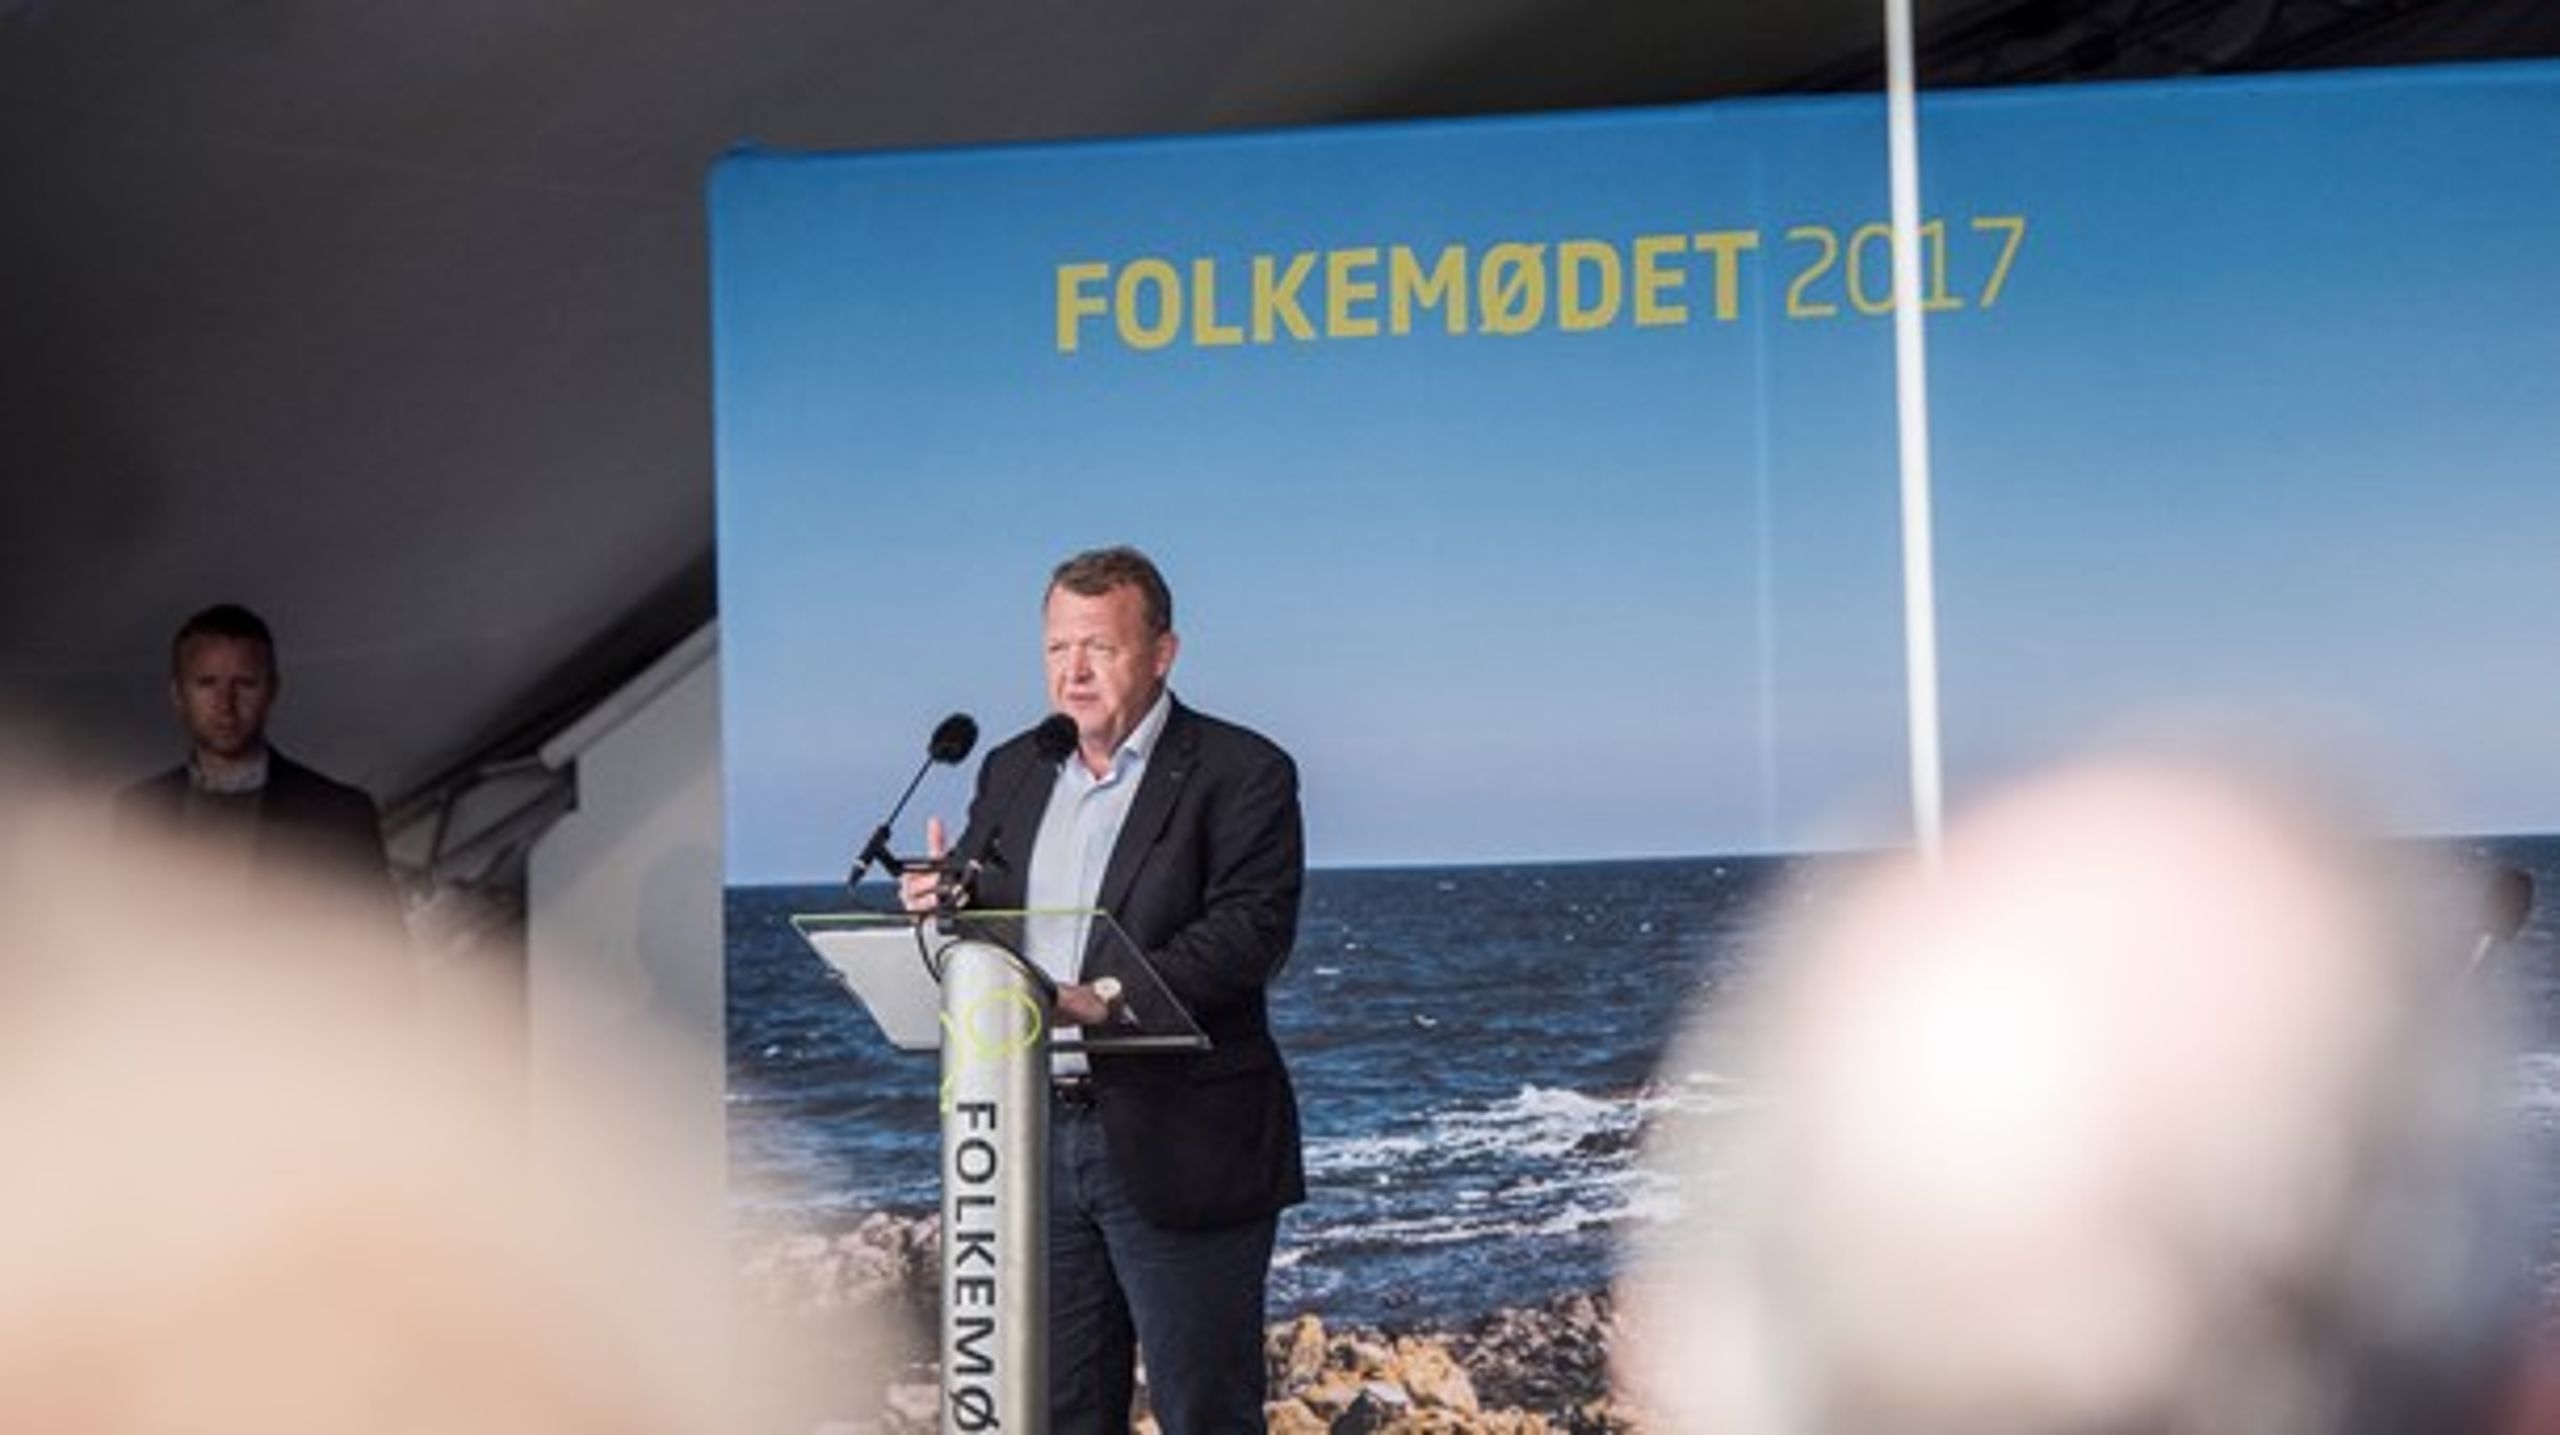 Folkemødet er en oplagt mulighed til at se på, hvordan Bornholm
som testzone for smart energi vil være et vigtigt skridt til at kunne teste nye
markedsmodeller og dermed fastholde Danmark som energiteknologisk pionerland, skriver aktører i fælles indlæg.